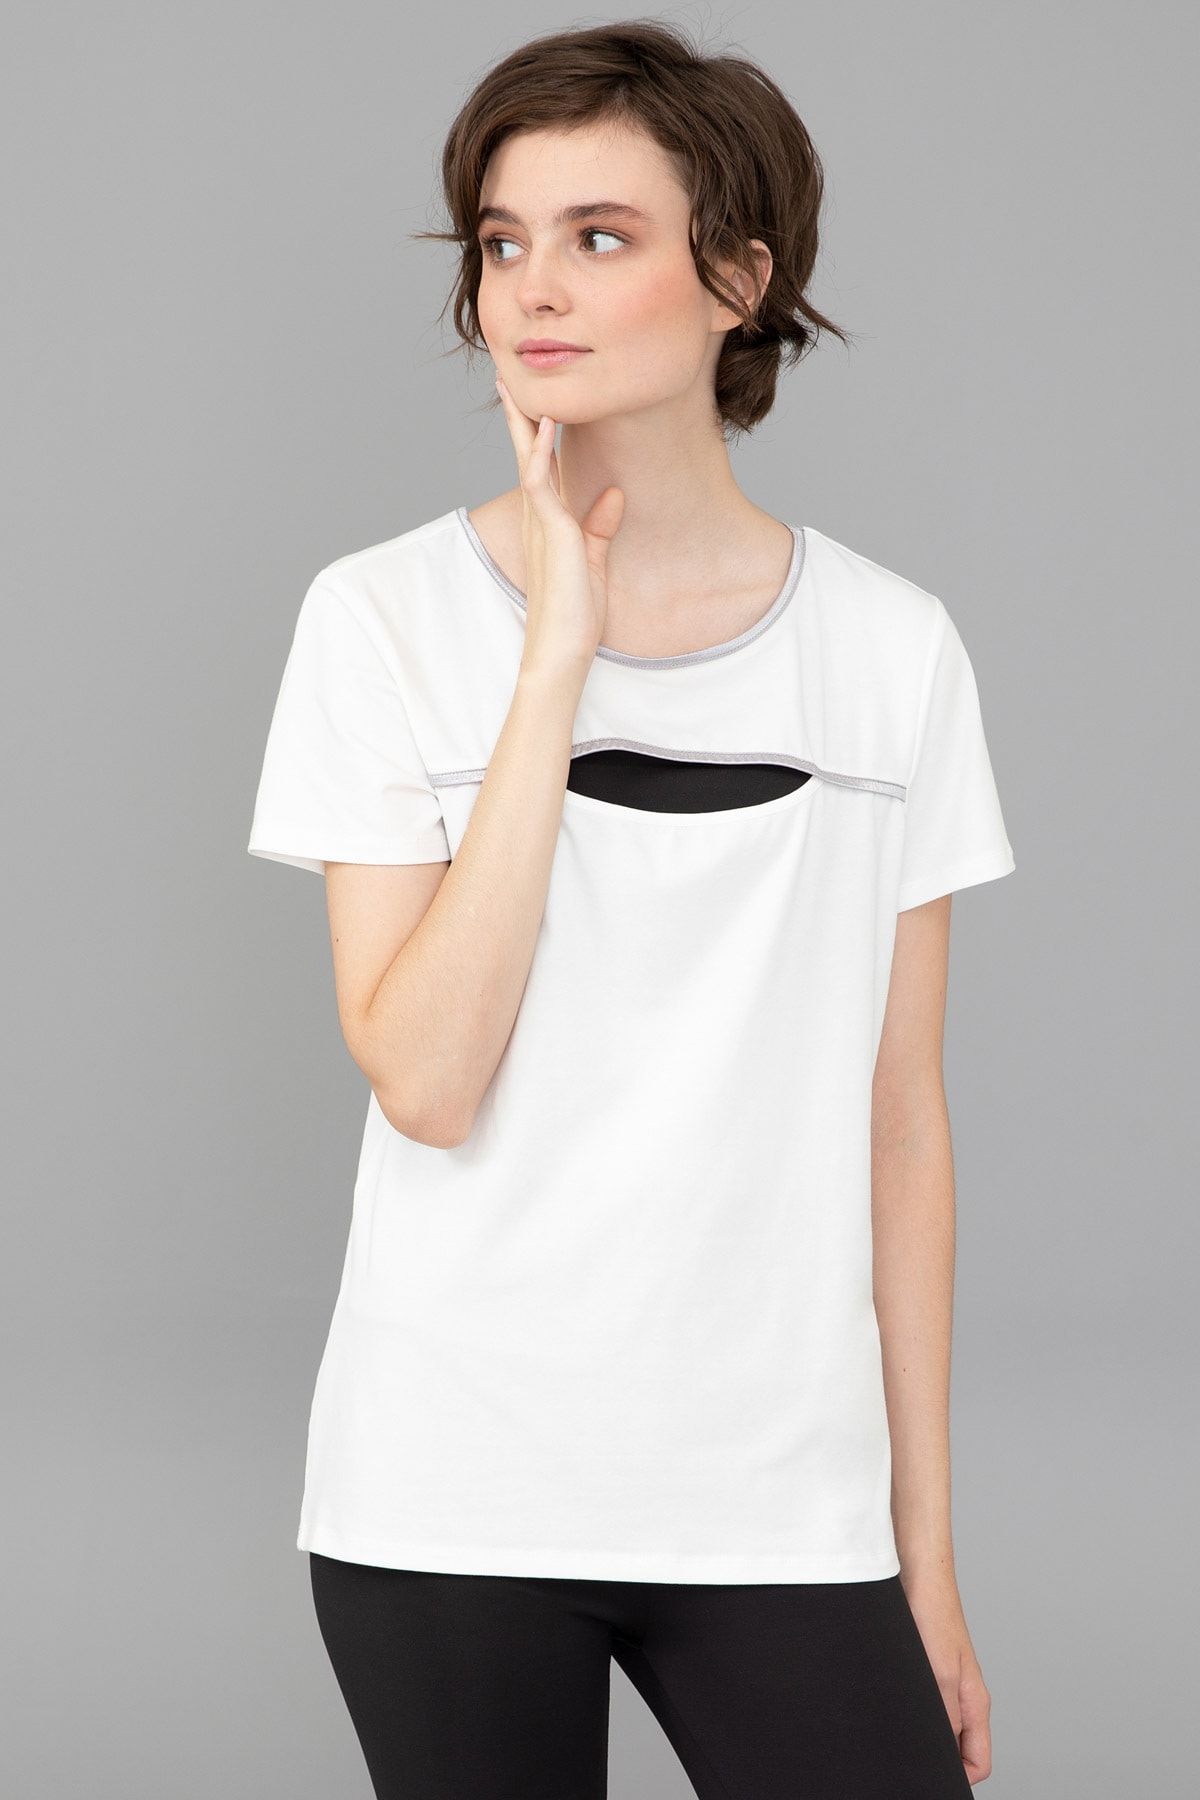 Pierre Cardin Beyaz Kadın T-Shirt G022SZ011.000.1347887